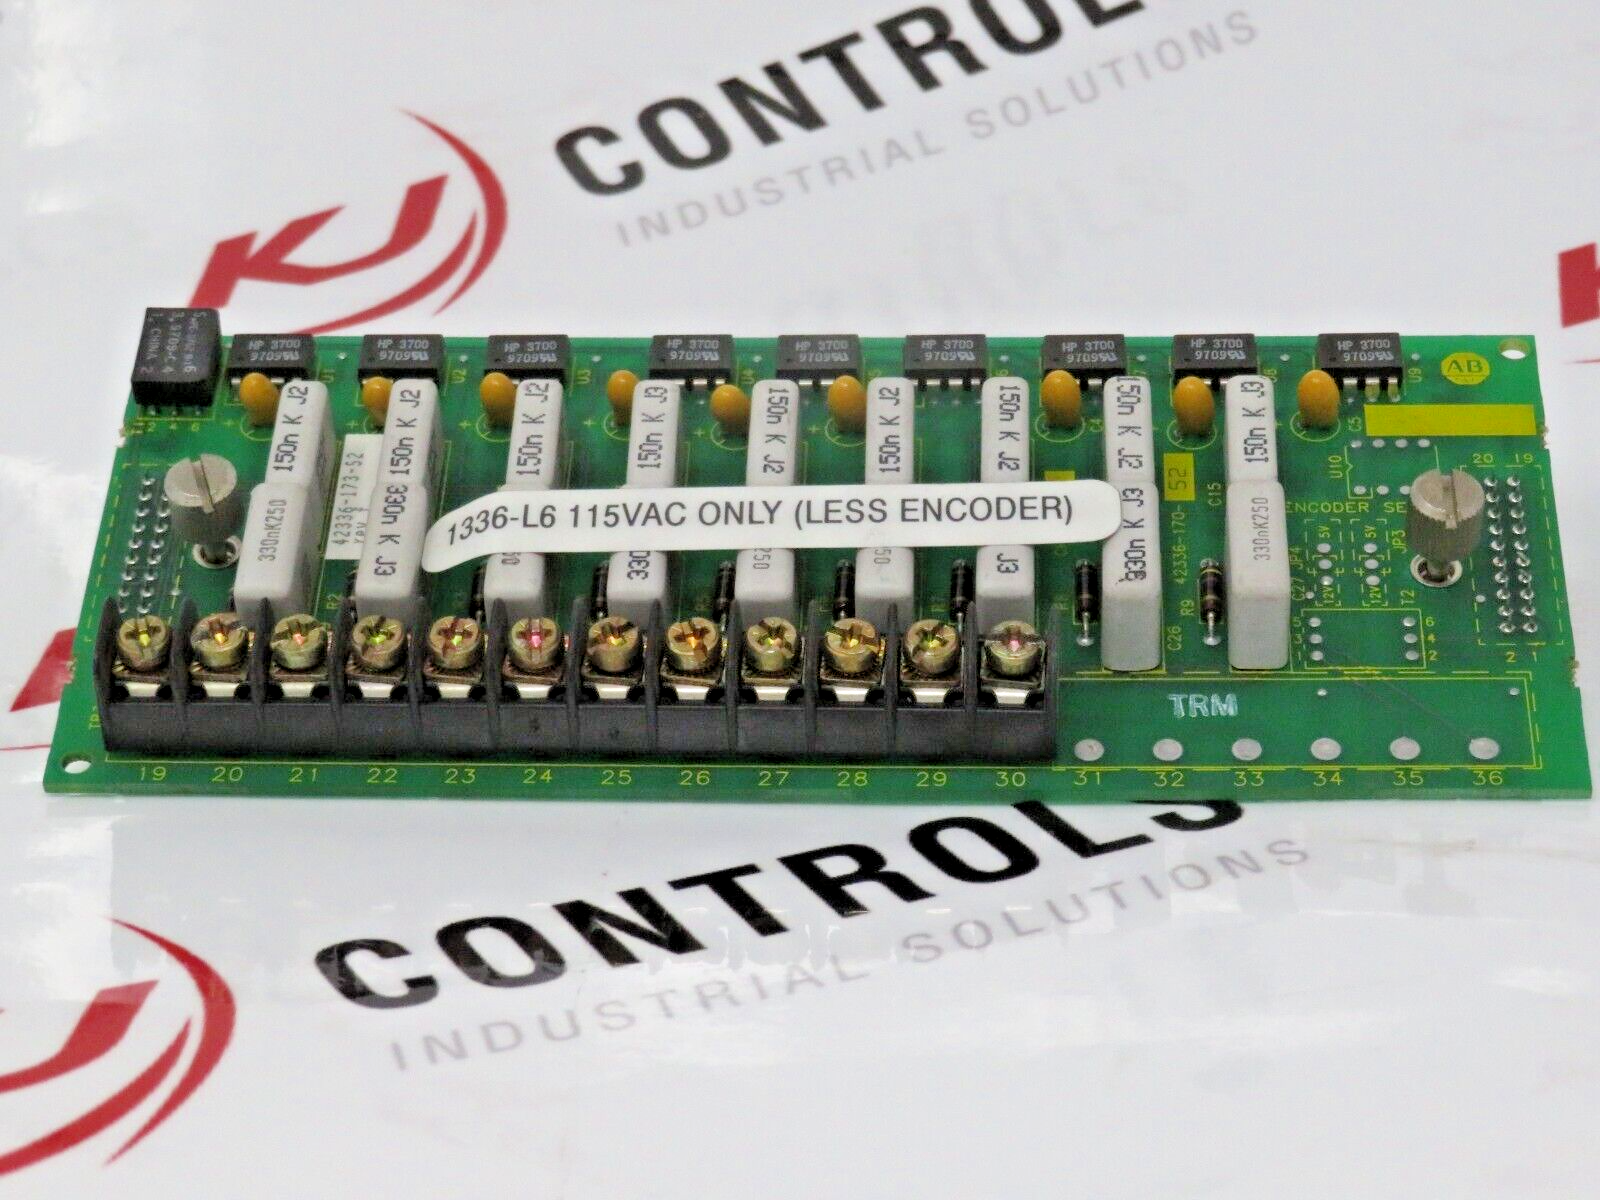 Allen-Bradley 1336-L6 Control Interface Board